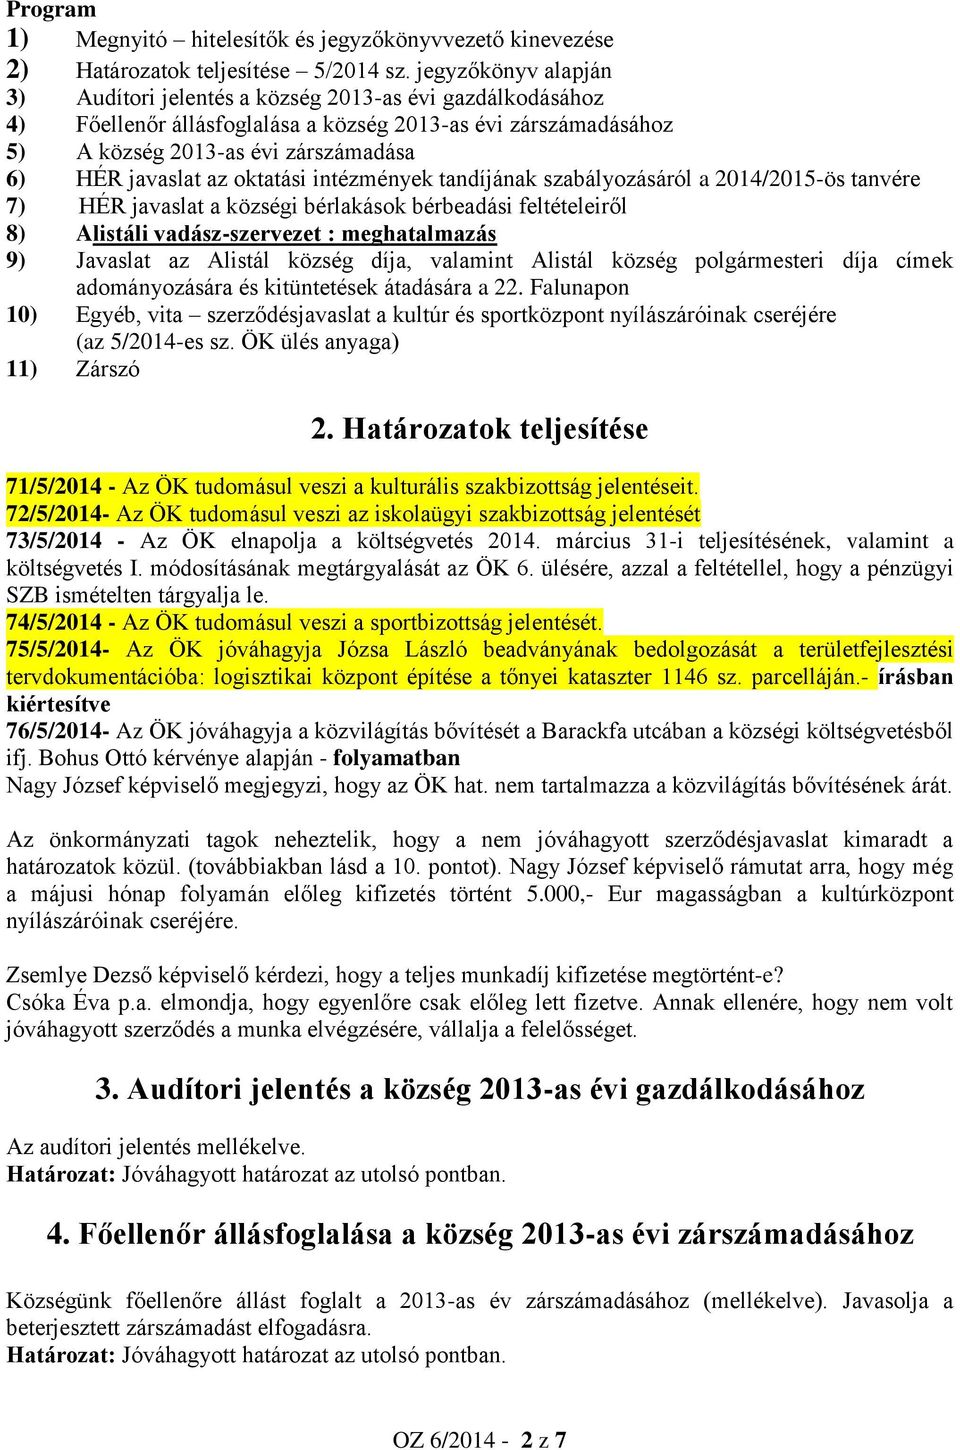 oktatási intézmények tandíjának szabályozásáról a 2014/2015-ös tanvére 7) HÉR javaslat a községi bérlakások bérbeadási feltételeiről 8) Alistáli vadász-szervezet : meghatalmazás 9) Javaslat az